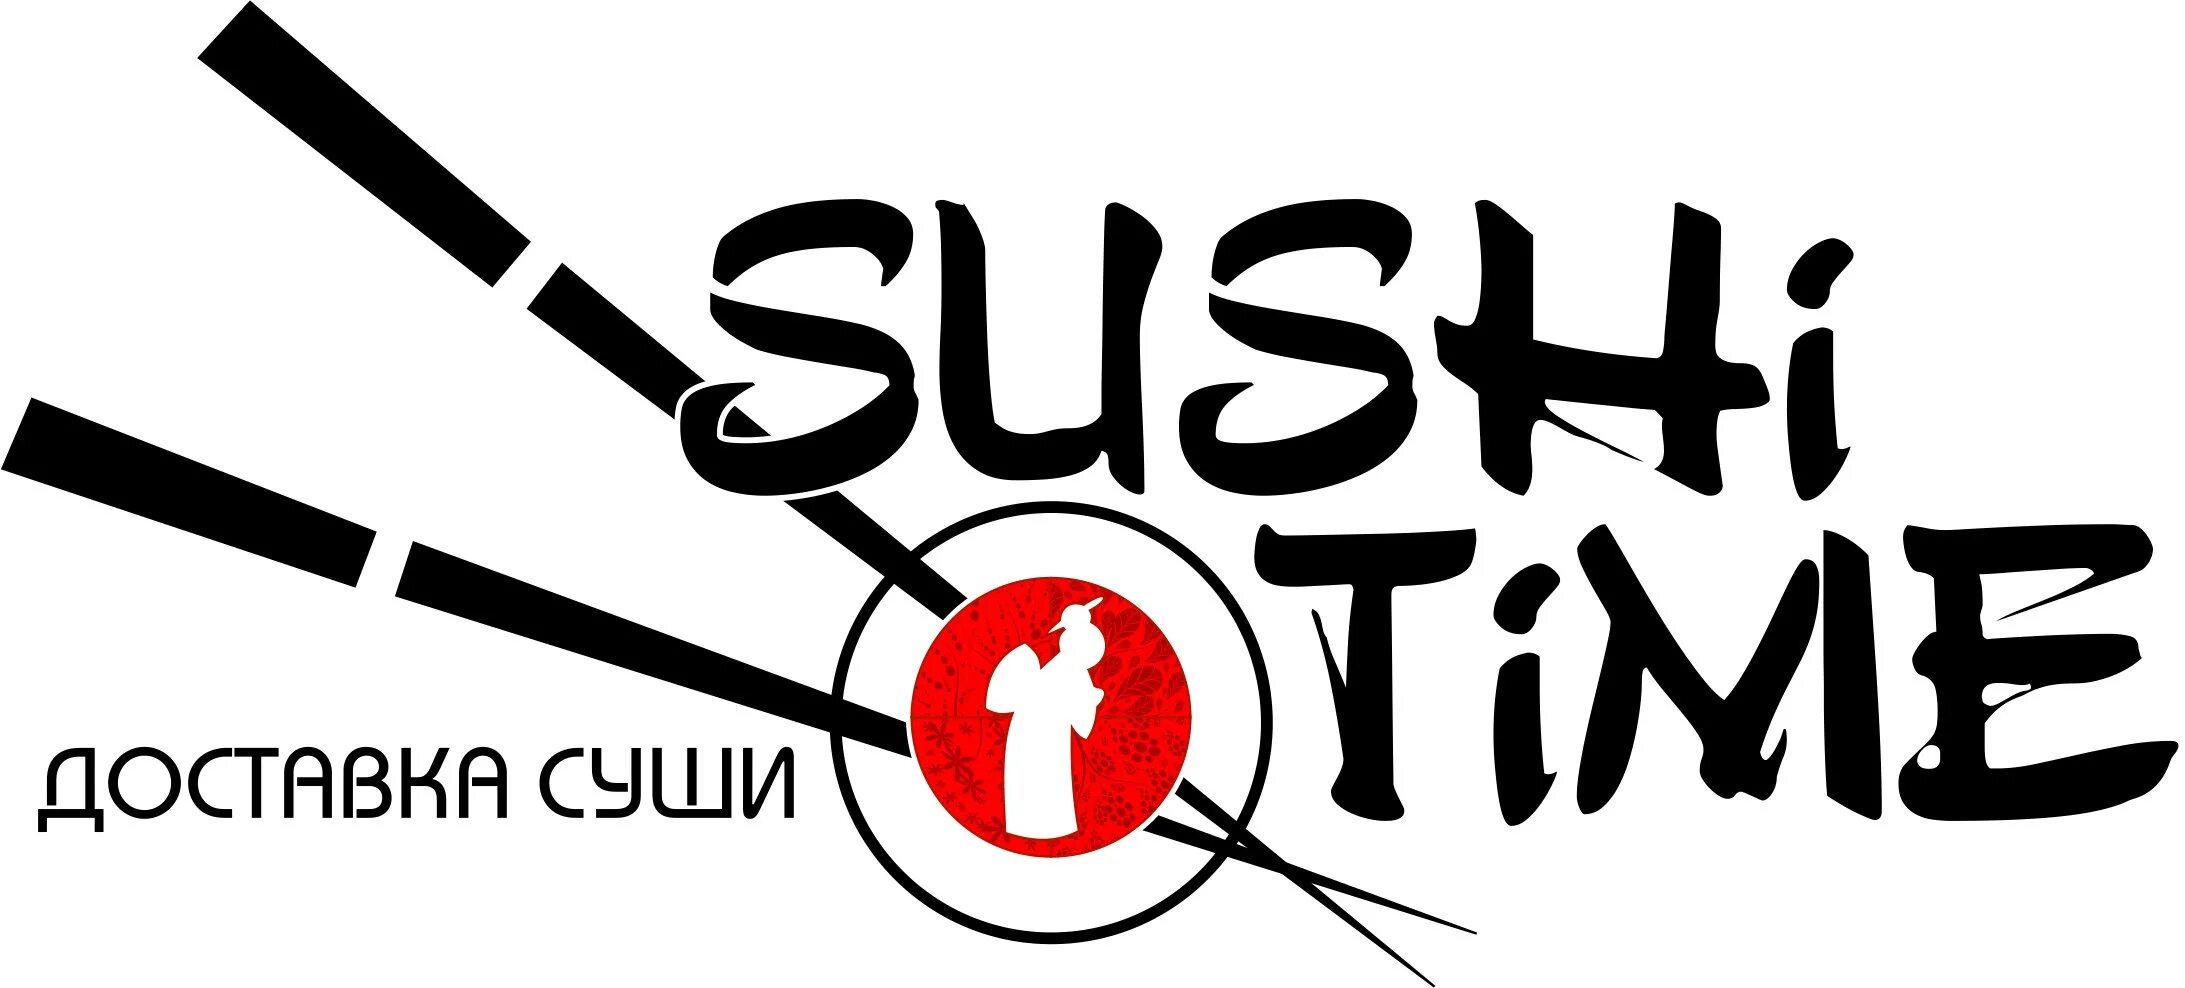 Суши тайм лого. Sushi time логотип. Суши тайм логотип на прозрачном фоне. Суши тайм лого вектор.